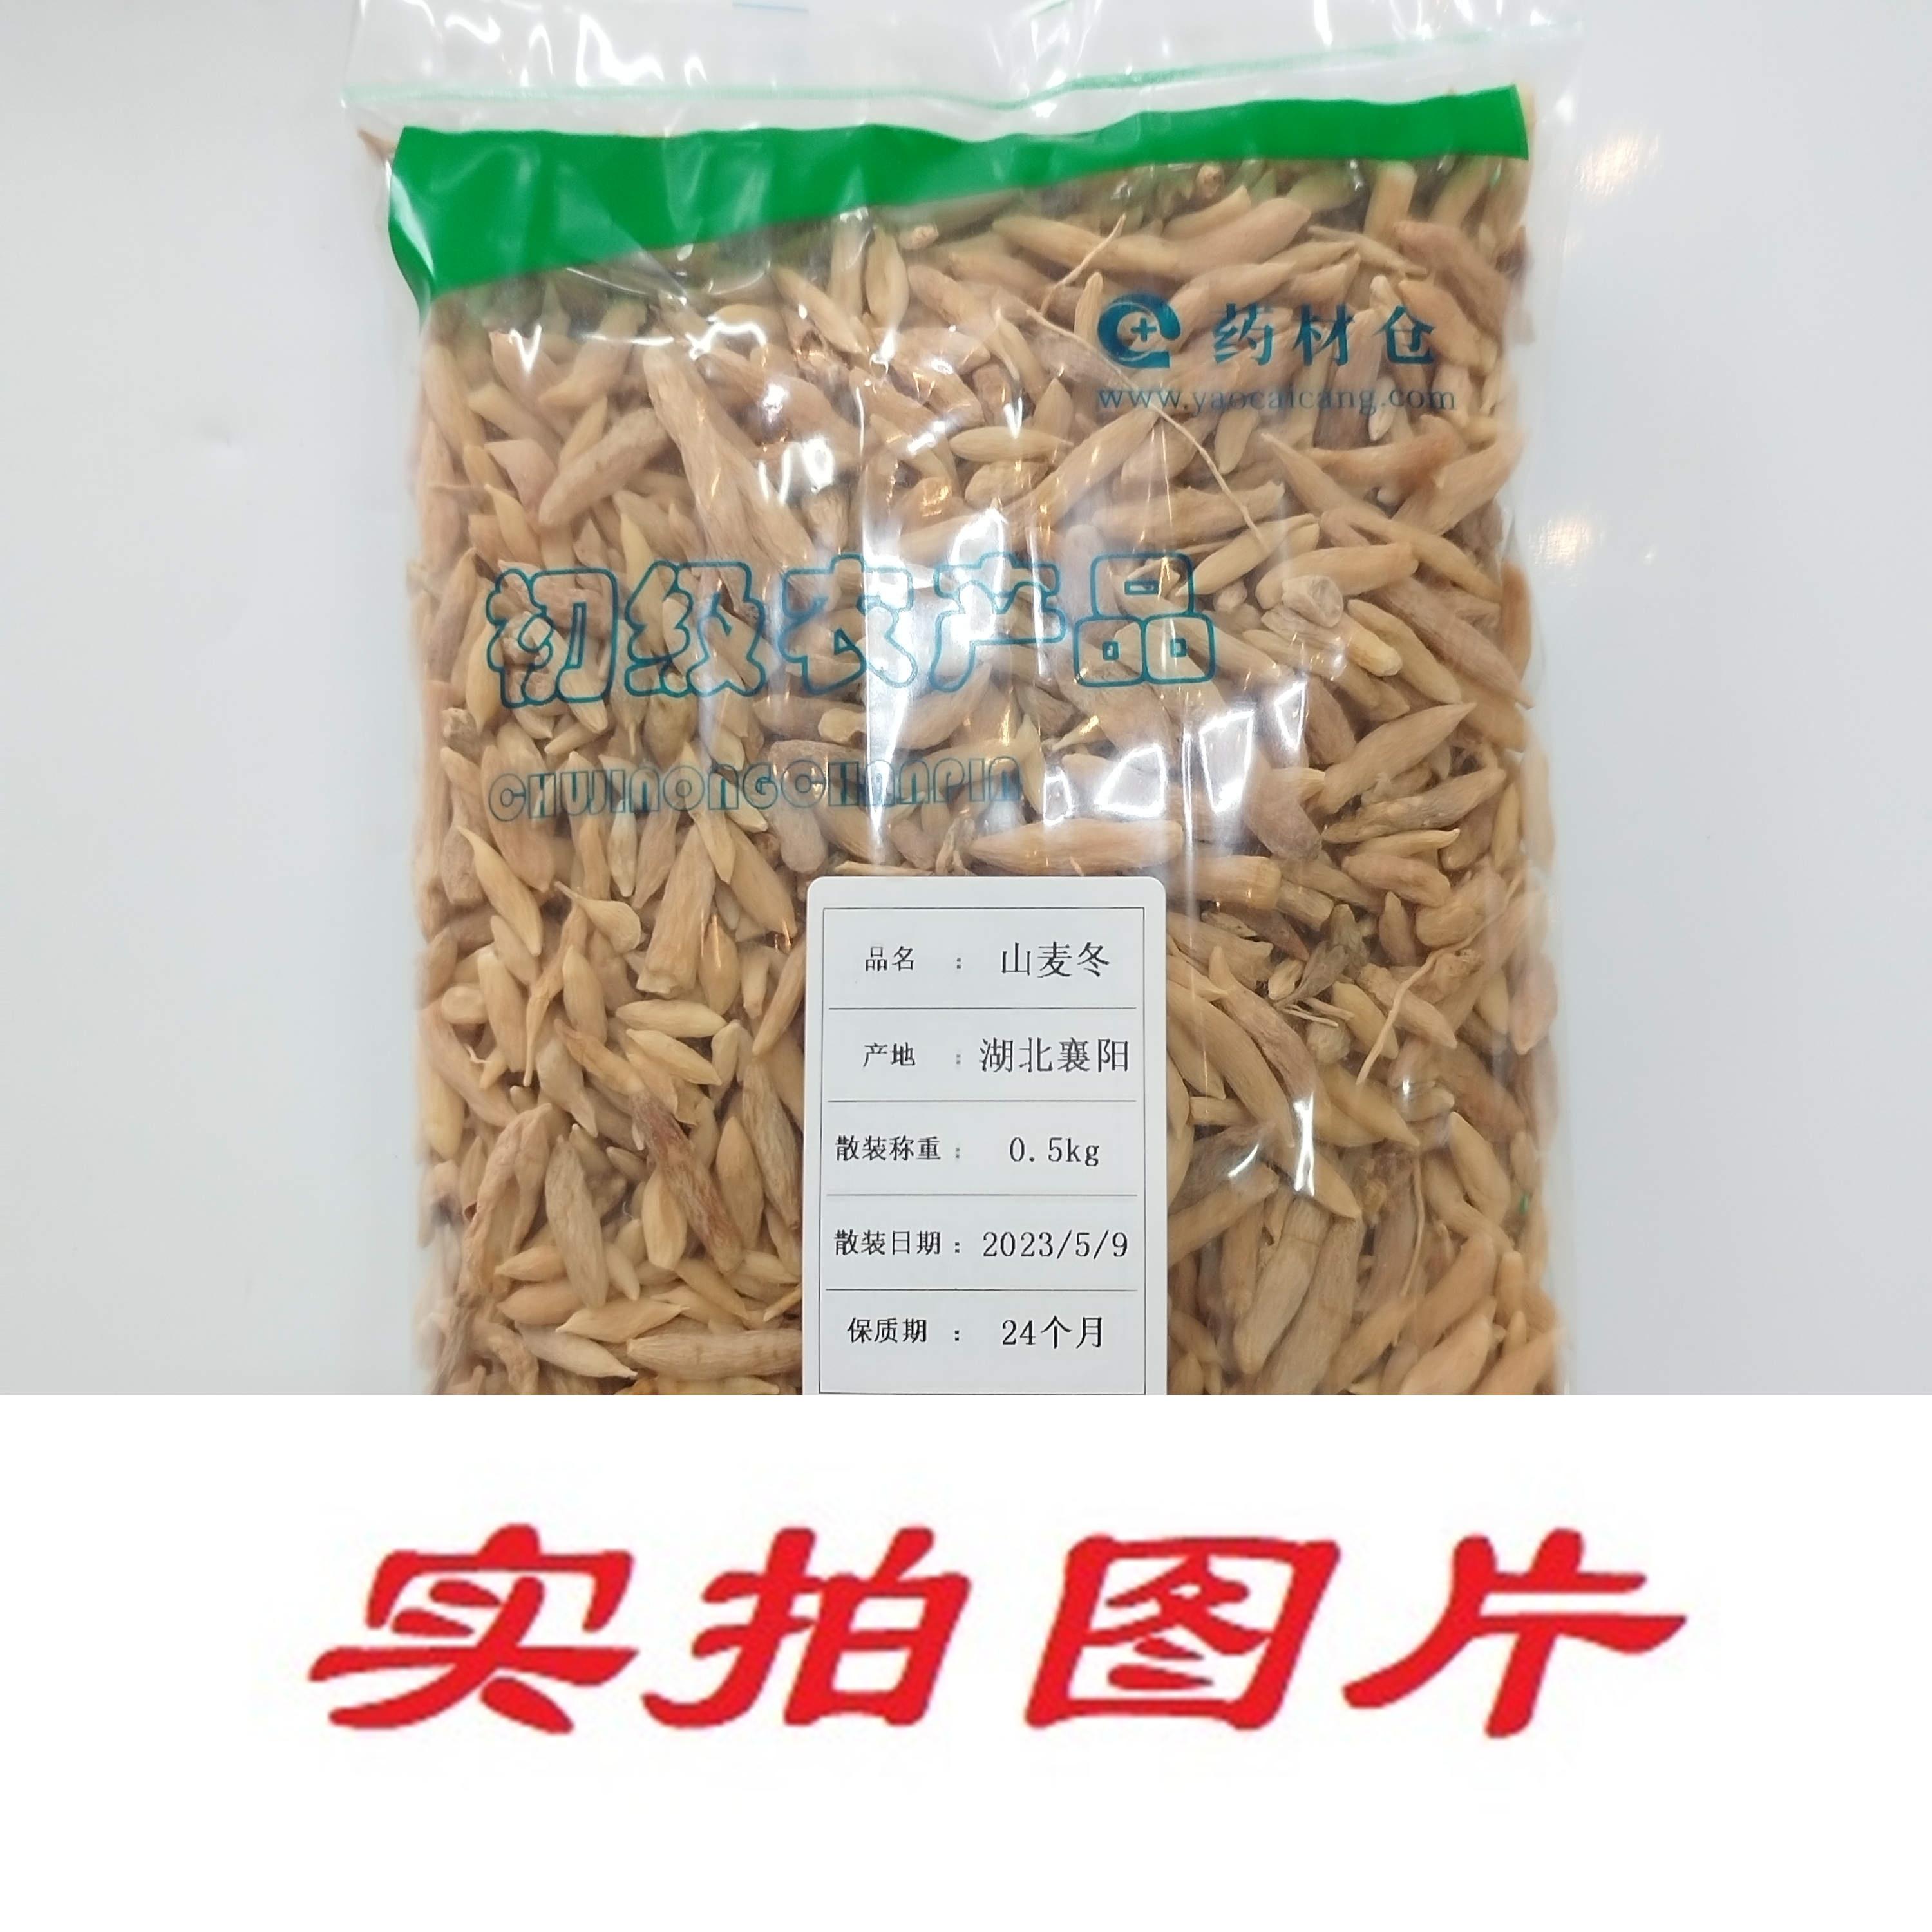 【】山麦冬0.5kg-农副产品